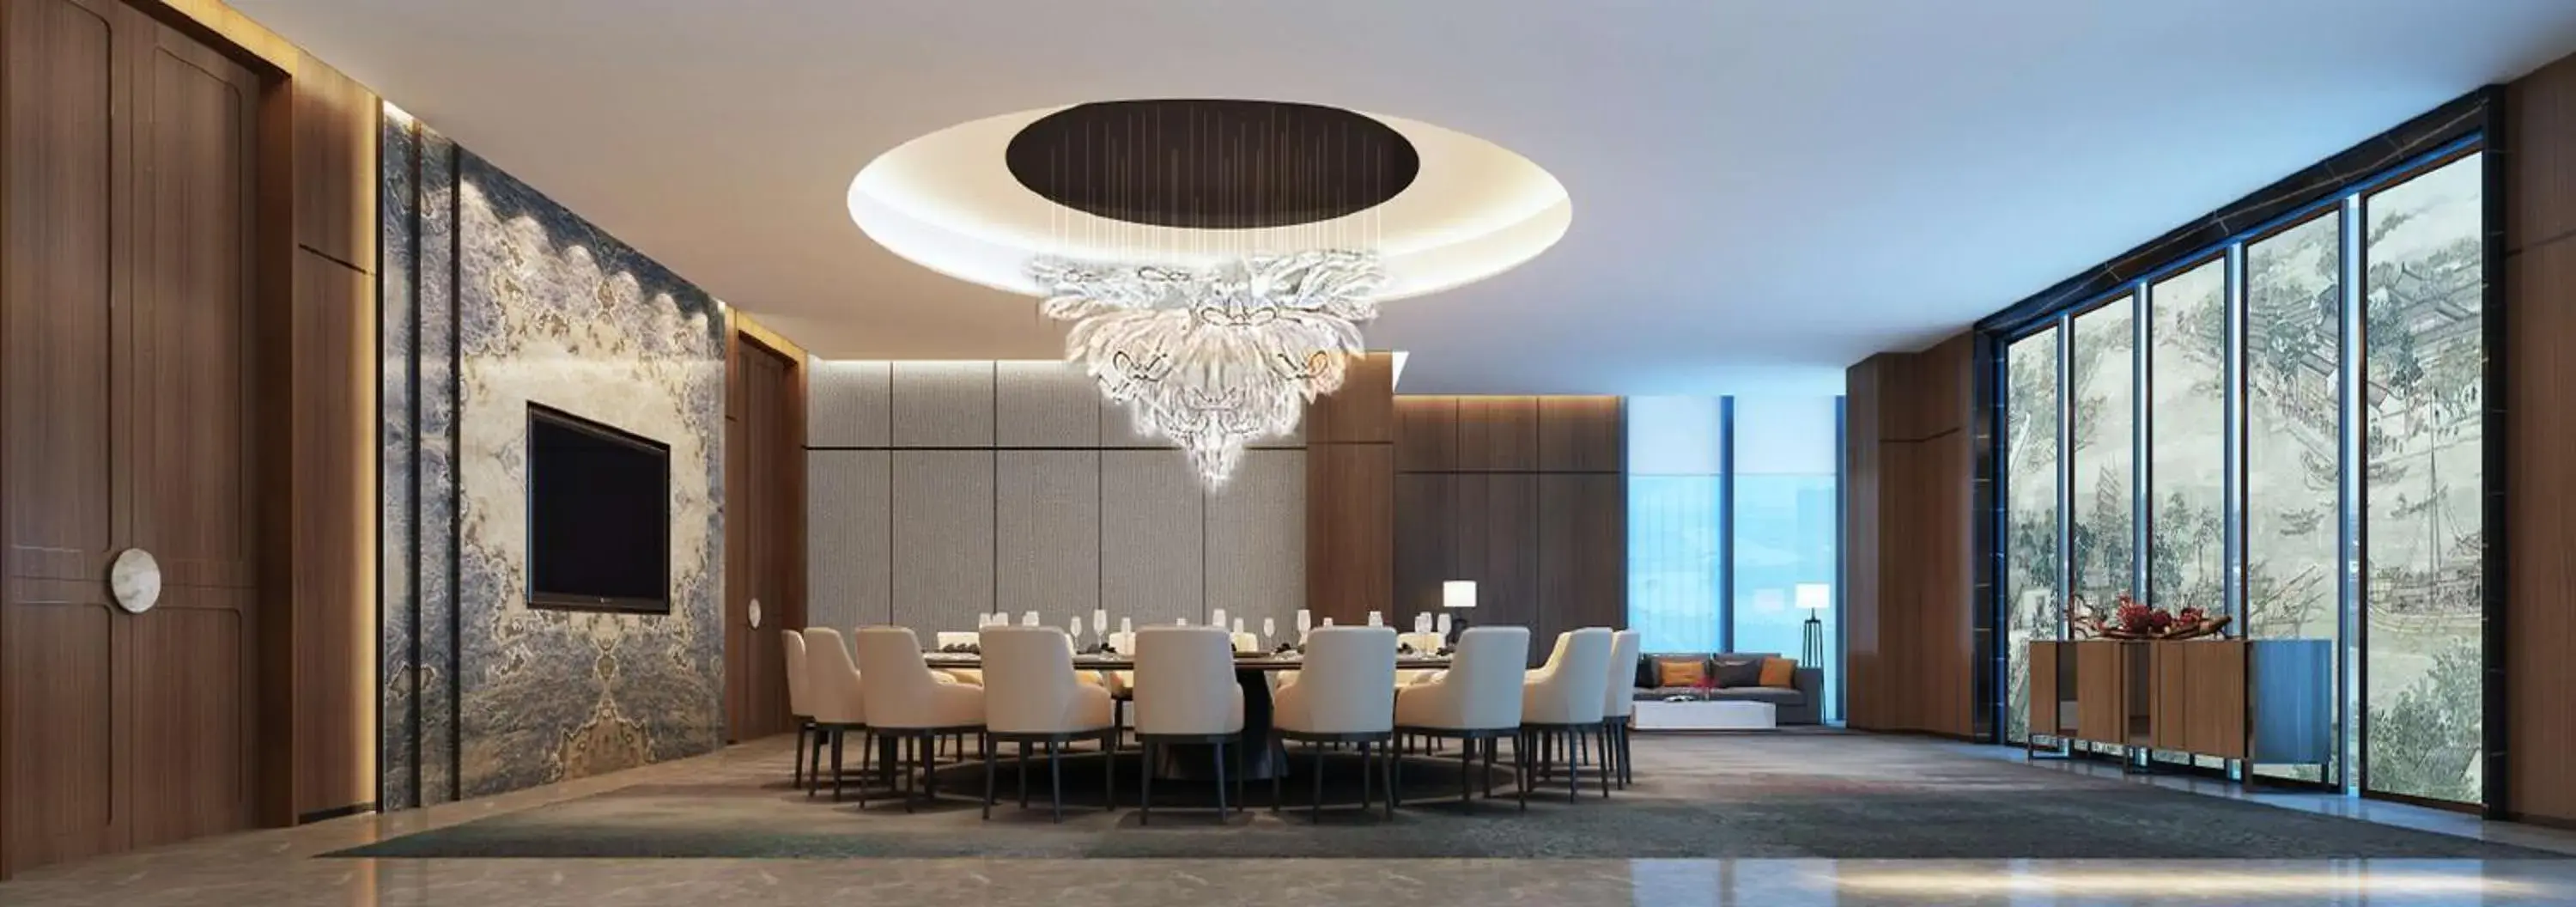 Dining area in Doubletree By Hilton Suzhou Wujiang